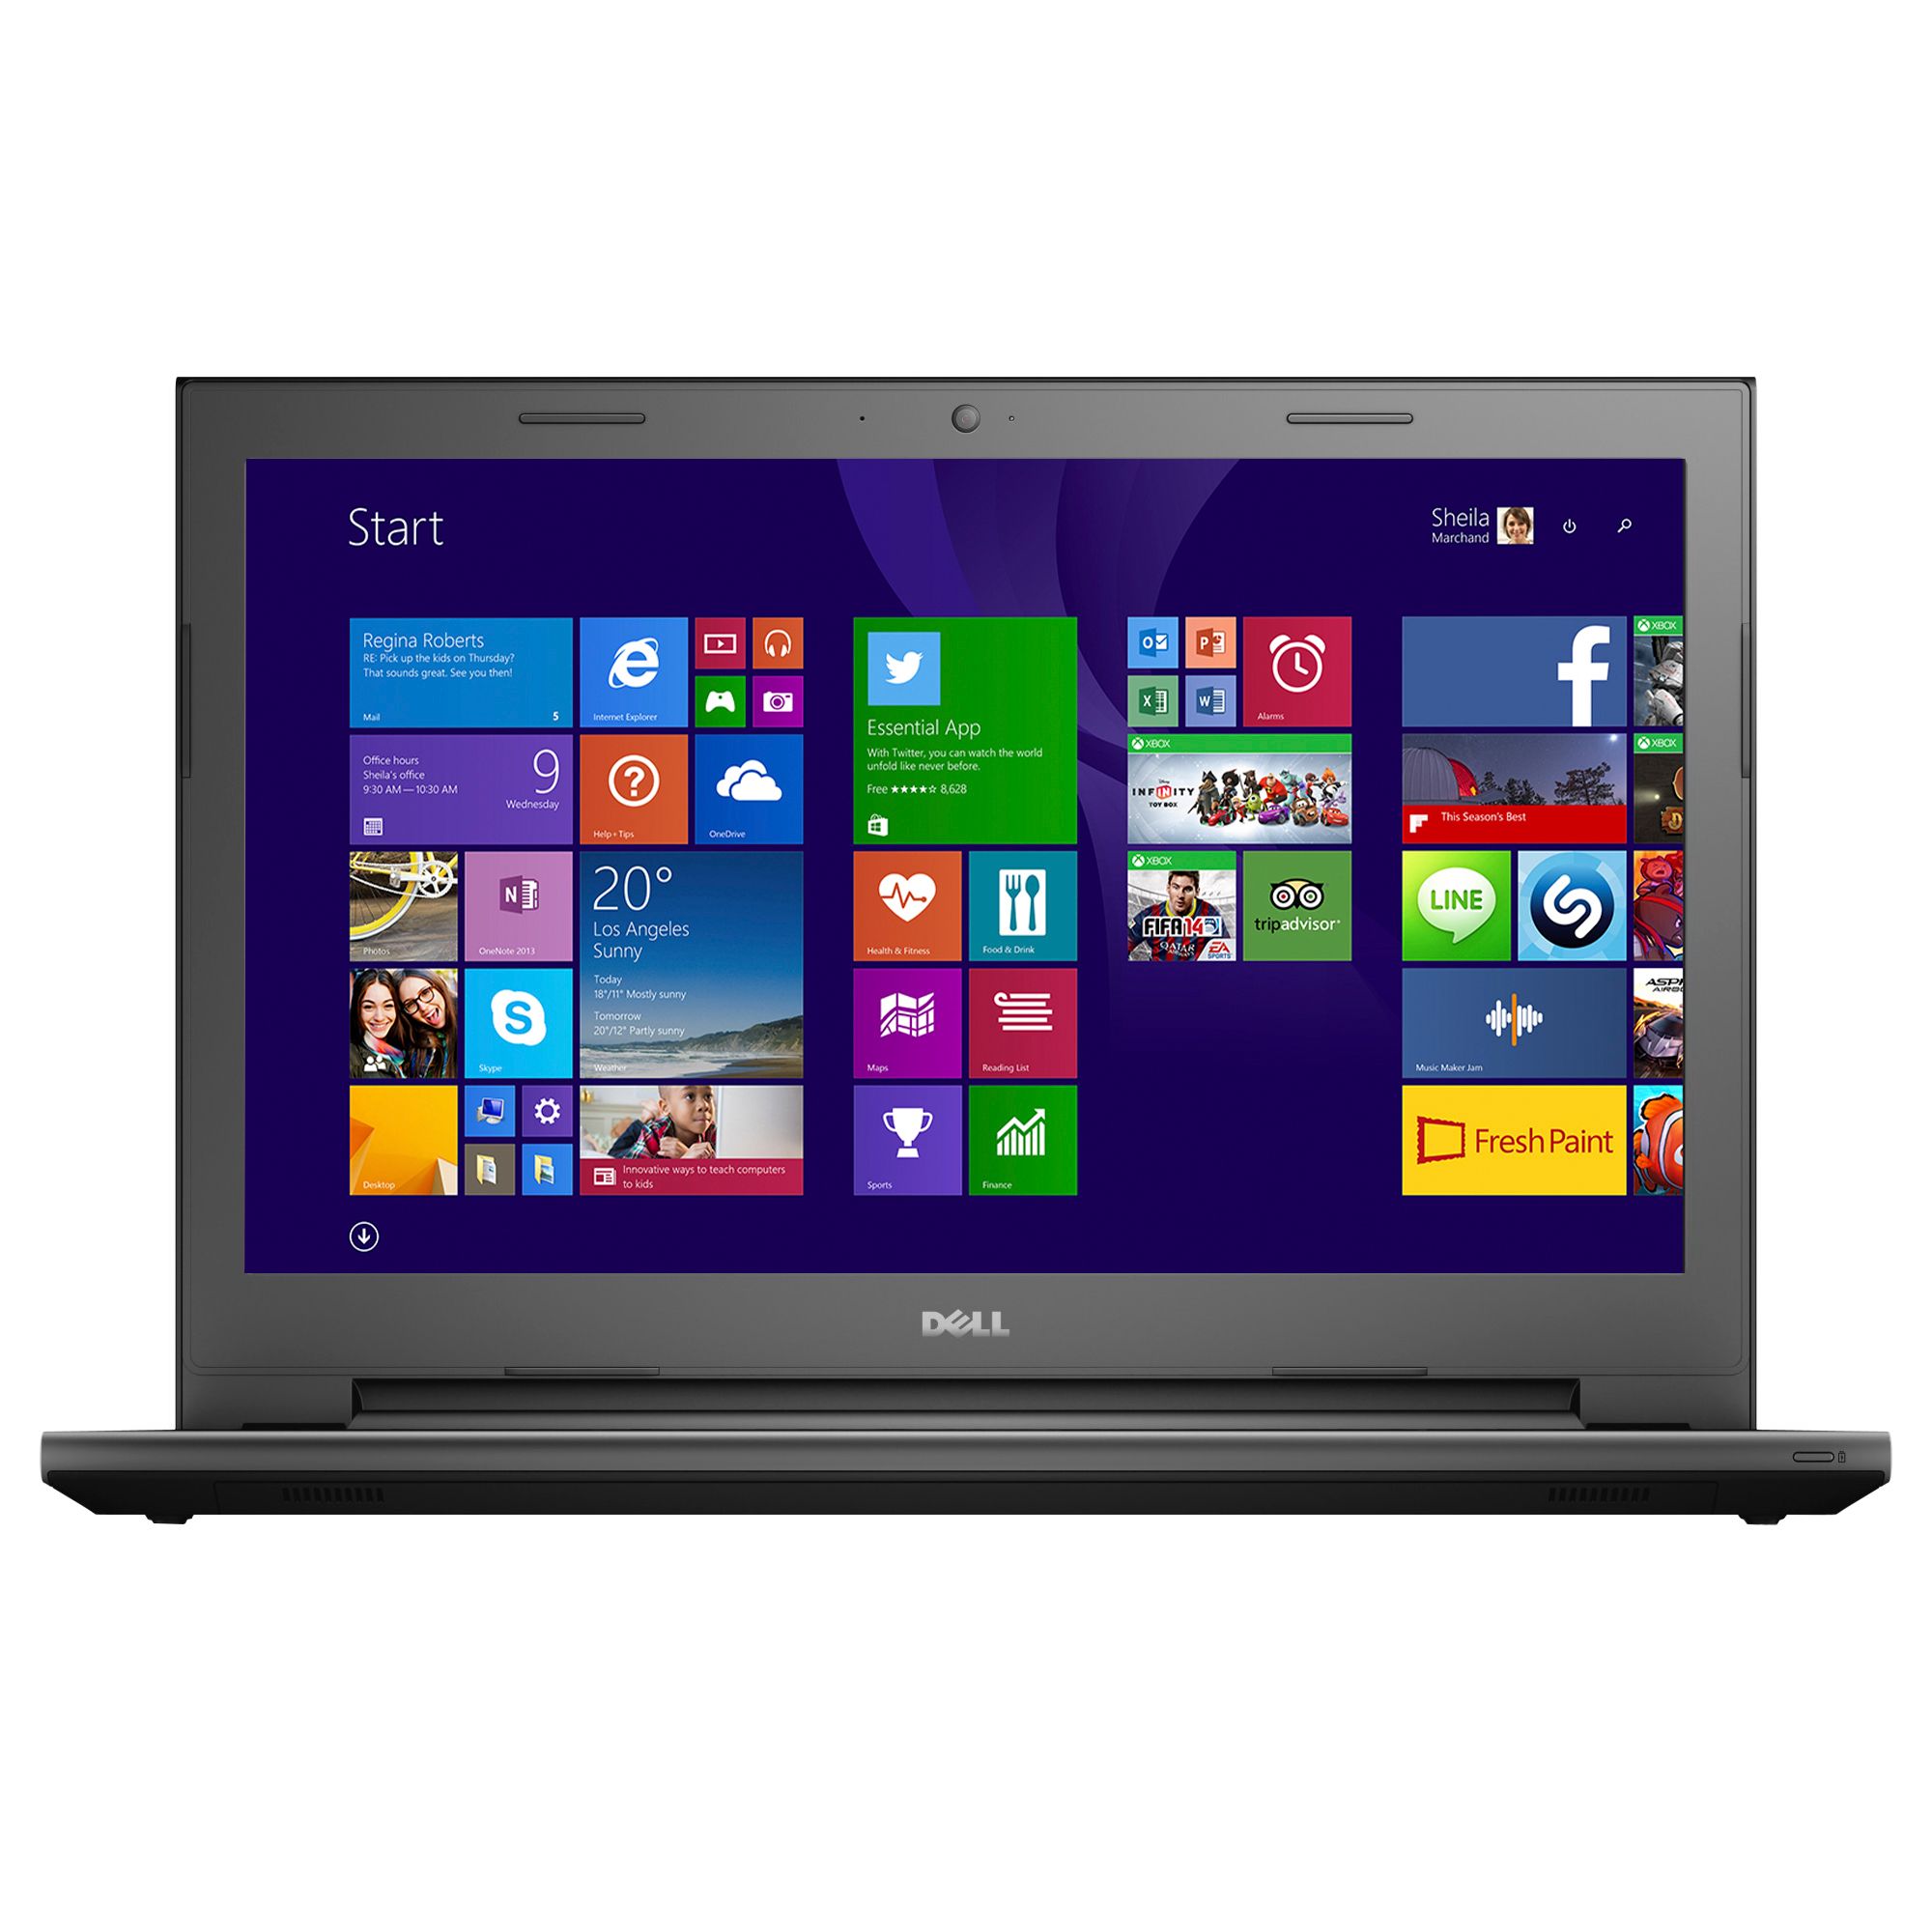 Laptop Dell Vostro 3546, Intel Core i3-4005U 1.70GHz, 4GB DDR3, 320GB SATA, DVD-RW, 15.6 Inch, Tastatura Numerica